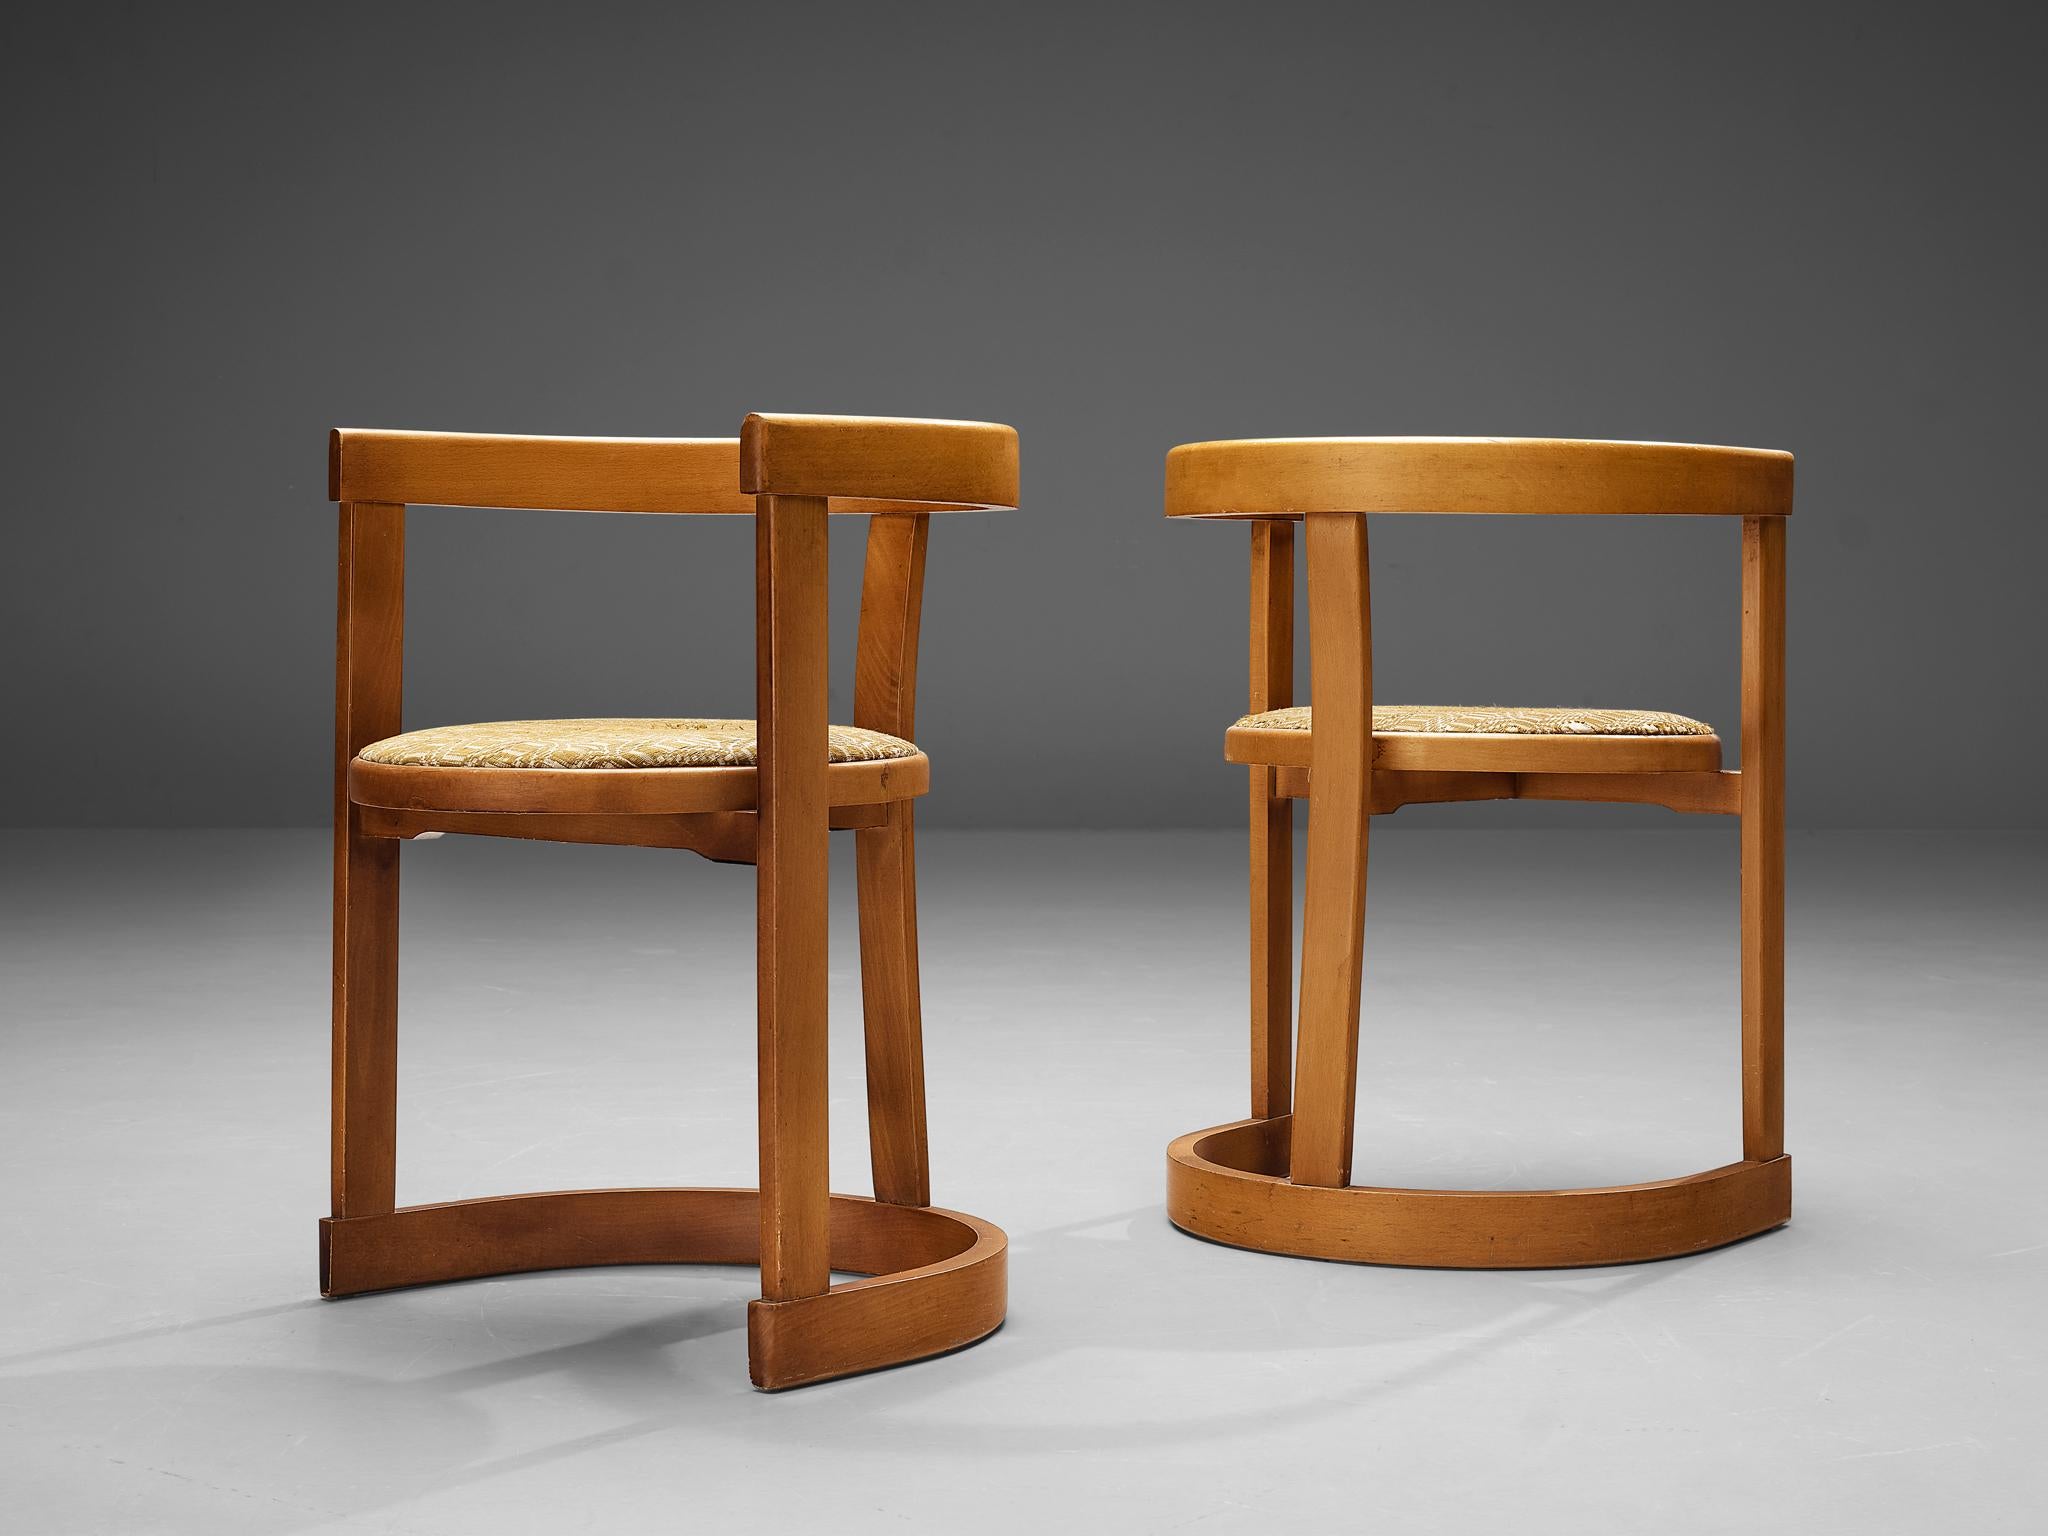 Paar Esszimmerstühle, Buche, Stoff, Italien, 1960er Jahre

Alles an diesem Stuhlpaar ist elegant und rund. Die Rücken-/Armlehne ist in der gleichen halbkreisförmigen, offenen Form wie die Basis gestaltet. Drei vertikale Leisten, von denen die